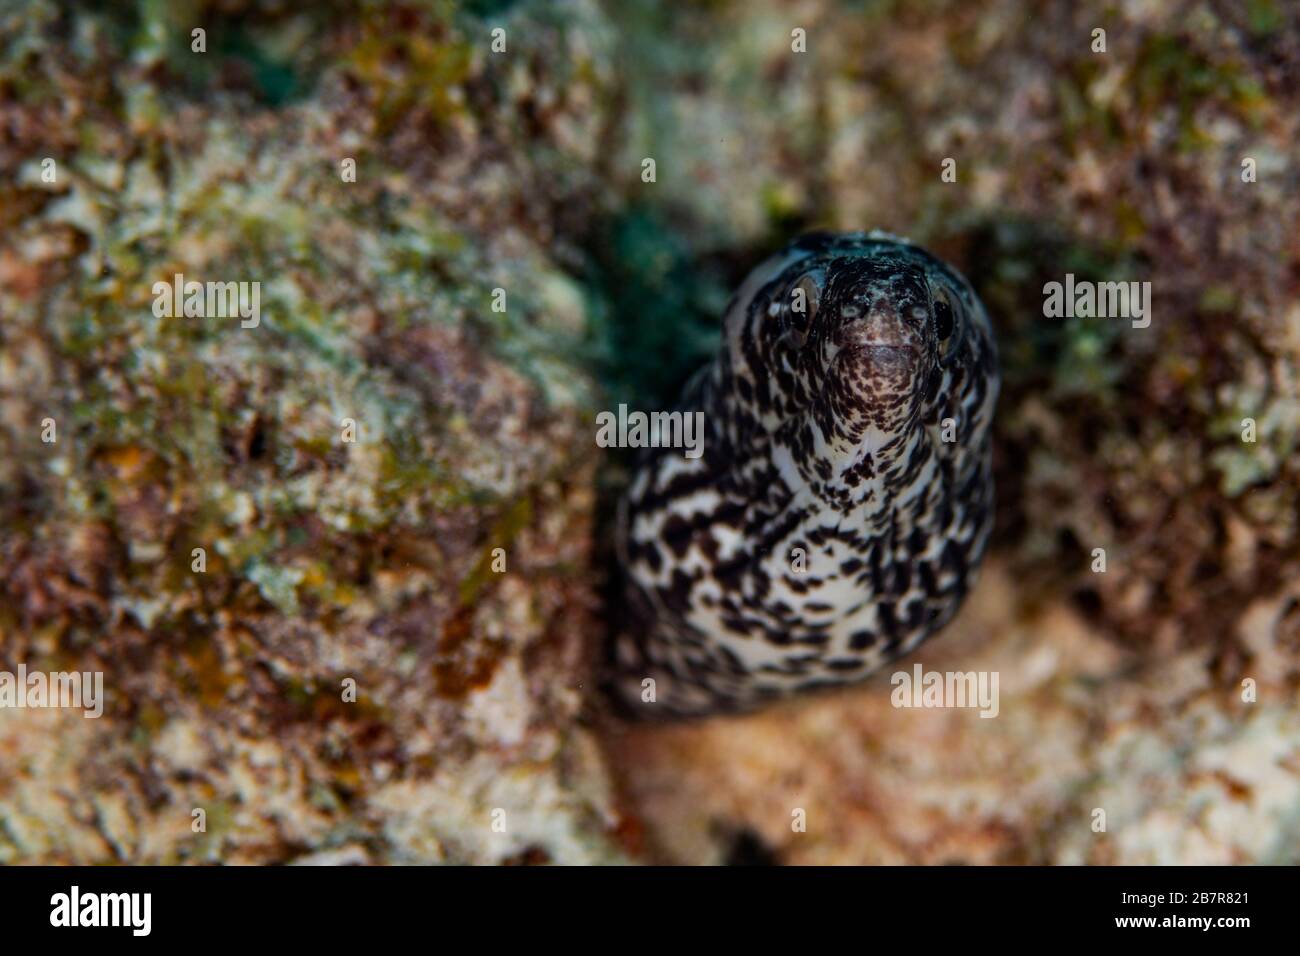 Une anguille moray tachetée s'épluche de son endroit caché sur le récif de Bonaire, aux Pays-Bas. Banque D'Images